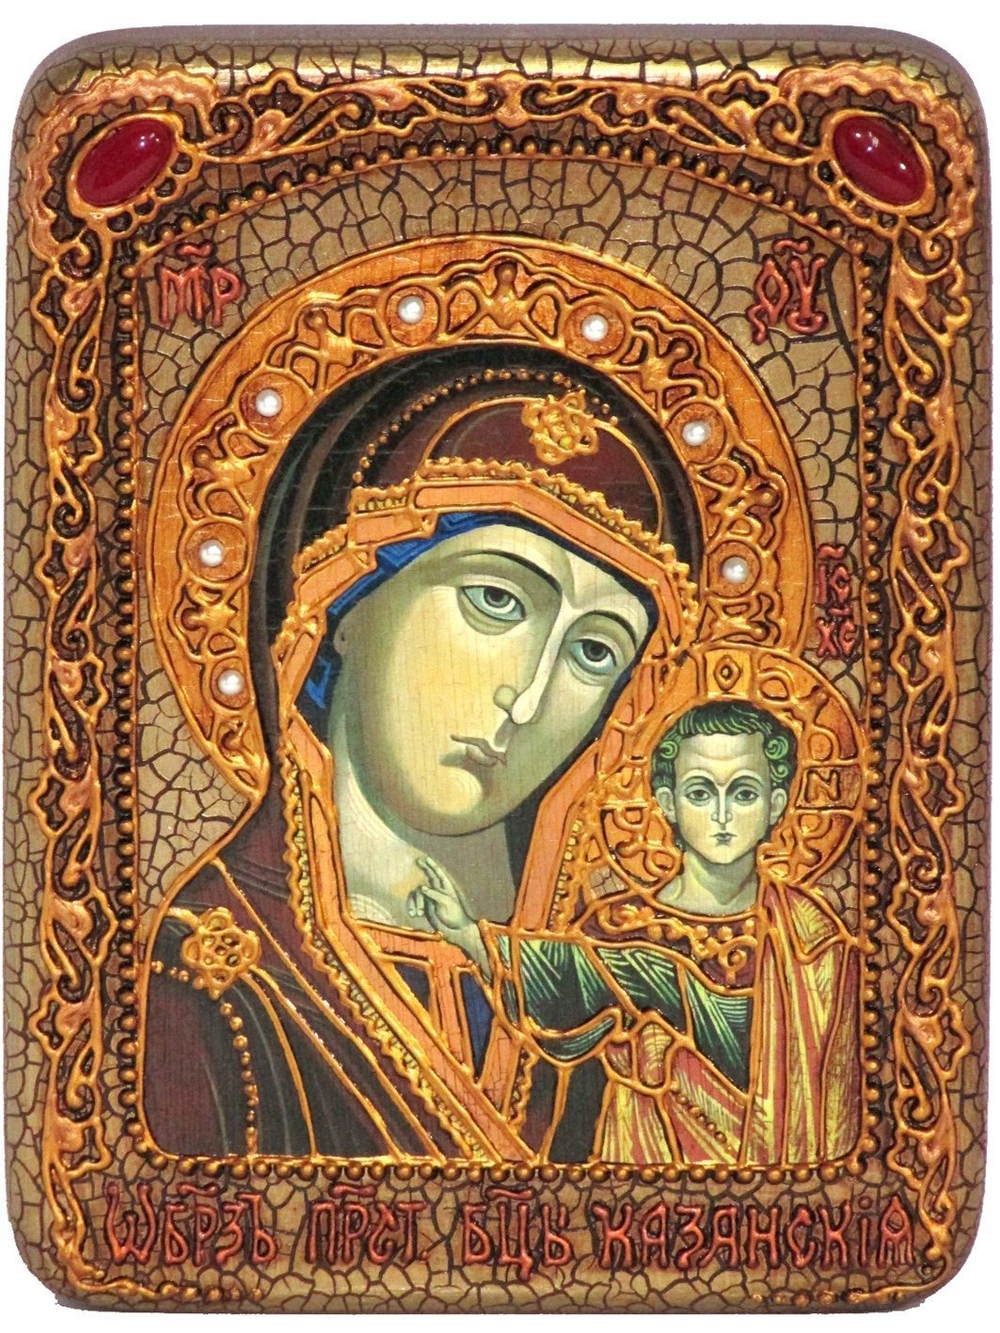 Икона "Образ Казанской Божией Матери" 20х15см на натуральном дереве в подарочной коробке